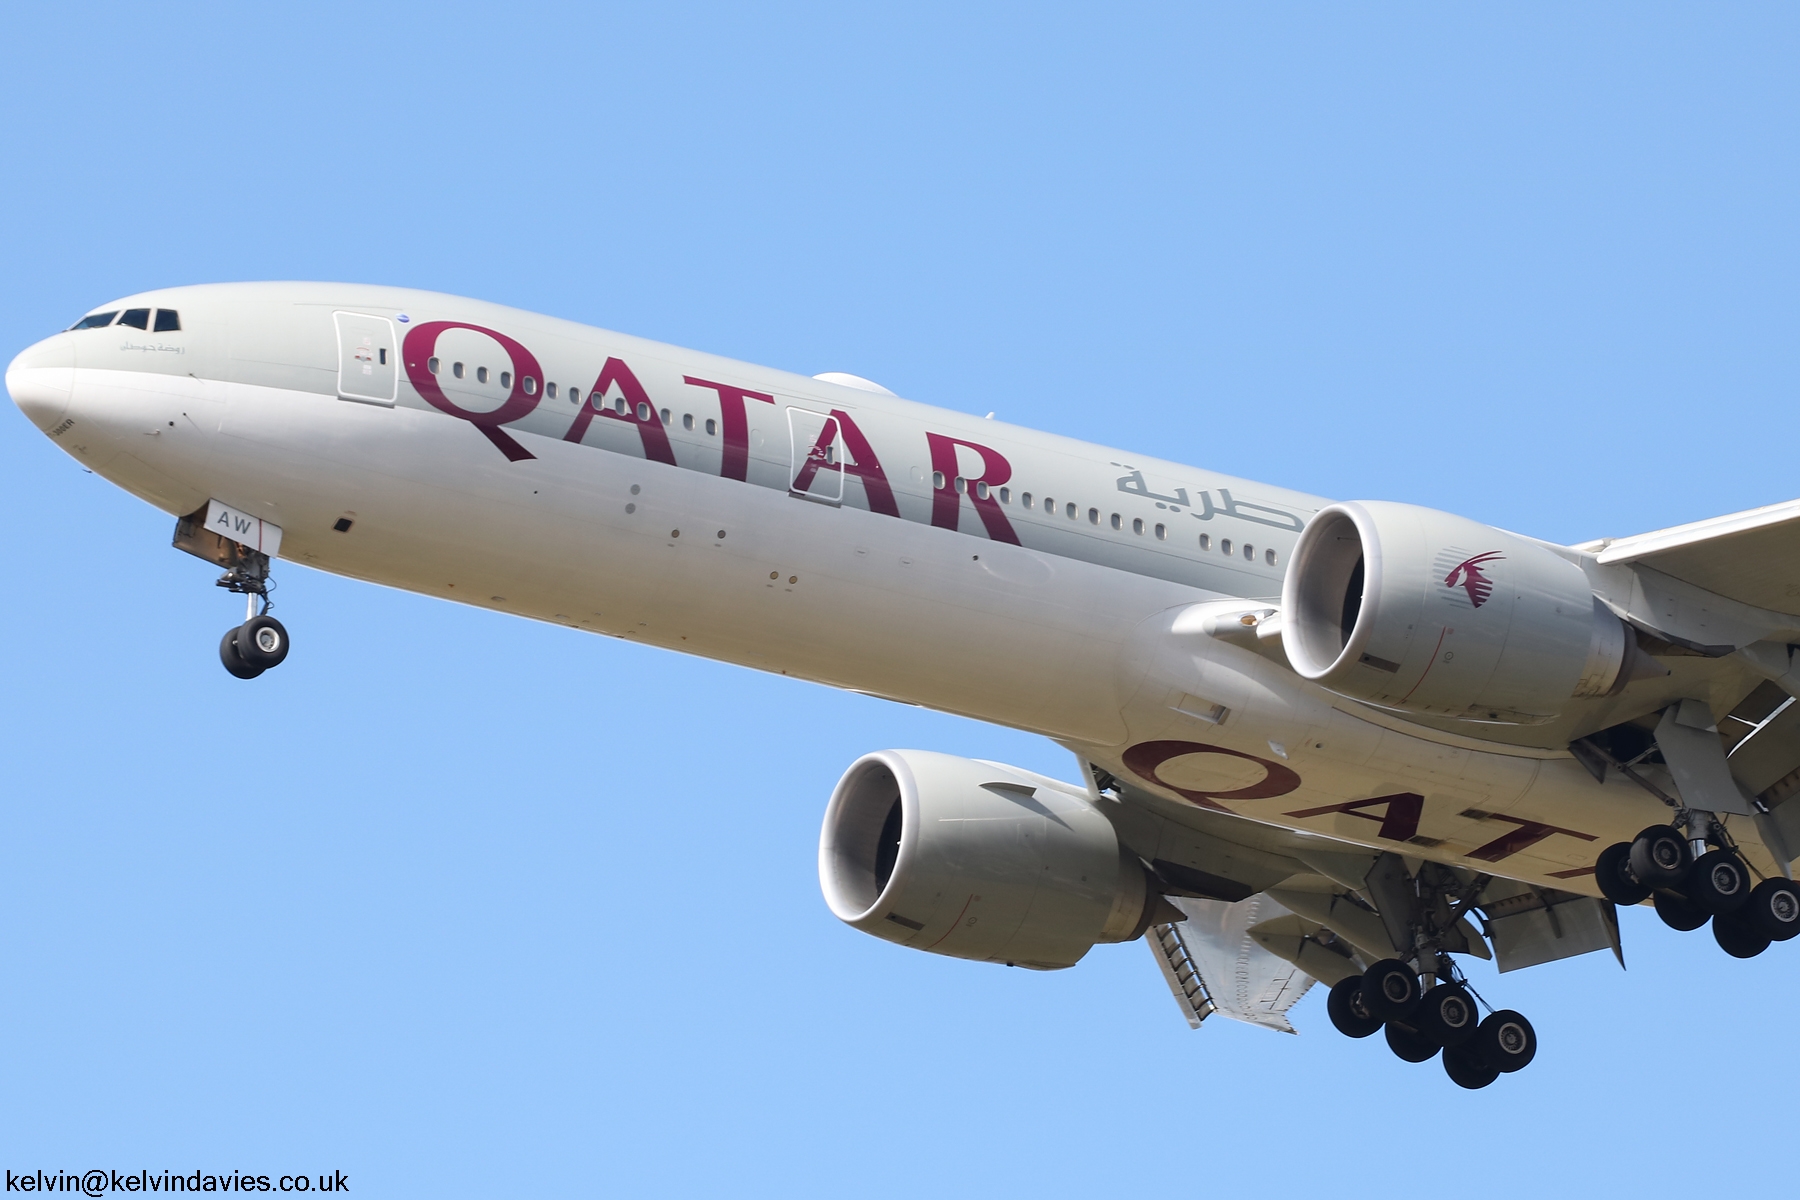 Qatar Airways 777 A7-BAW